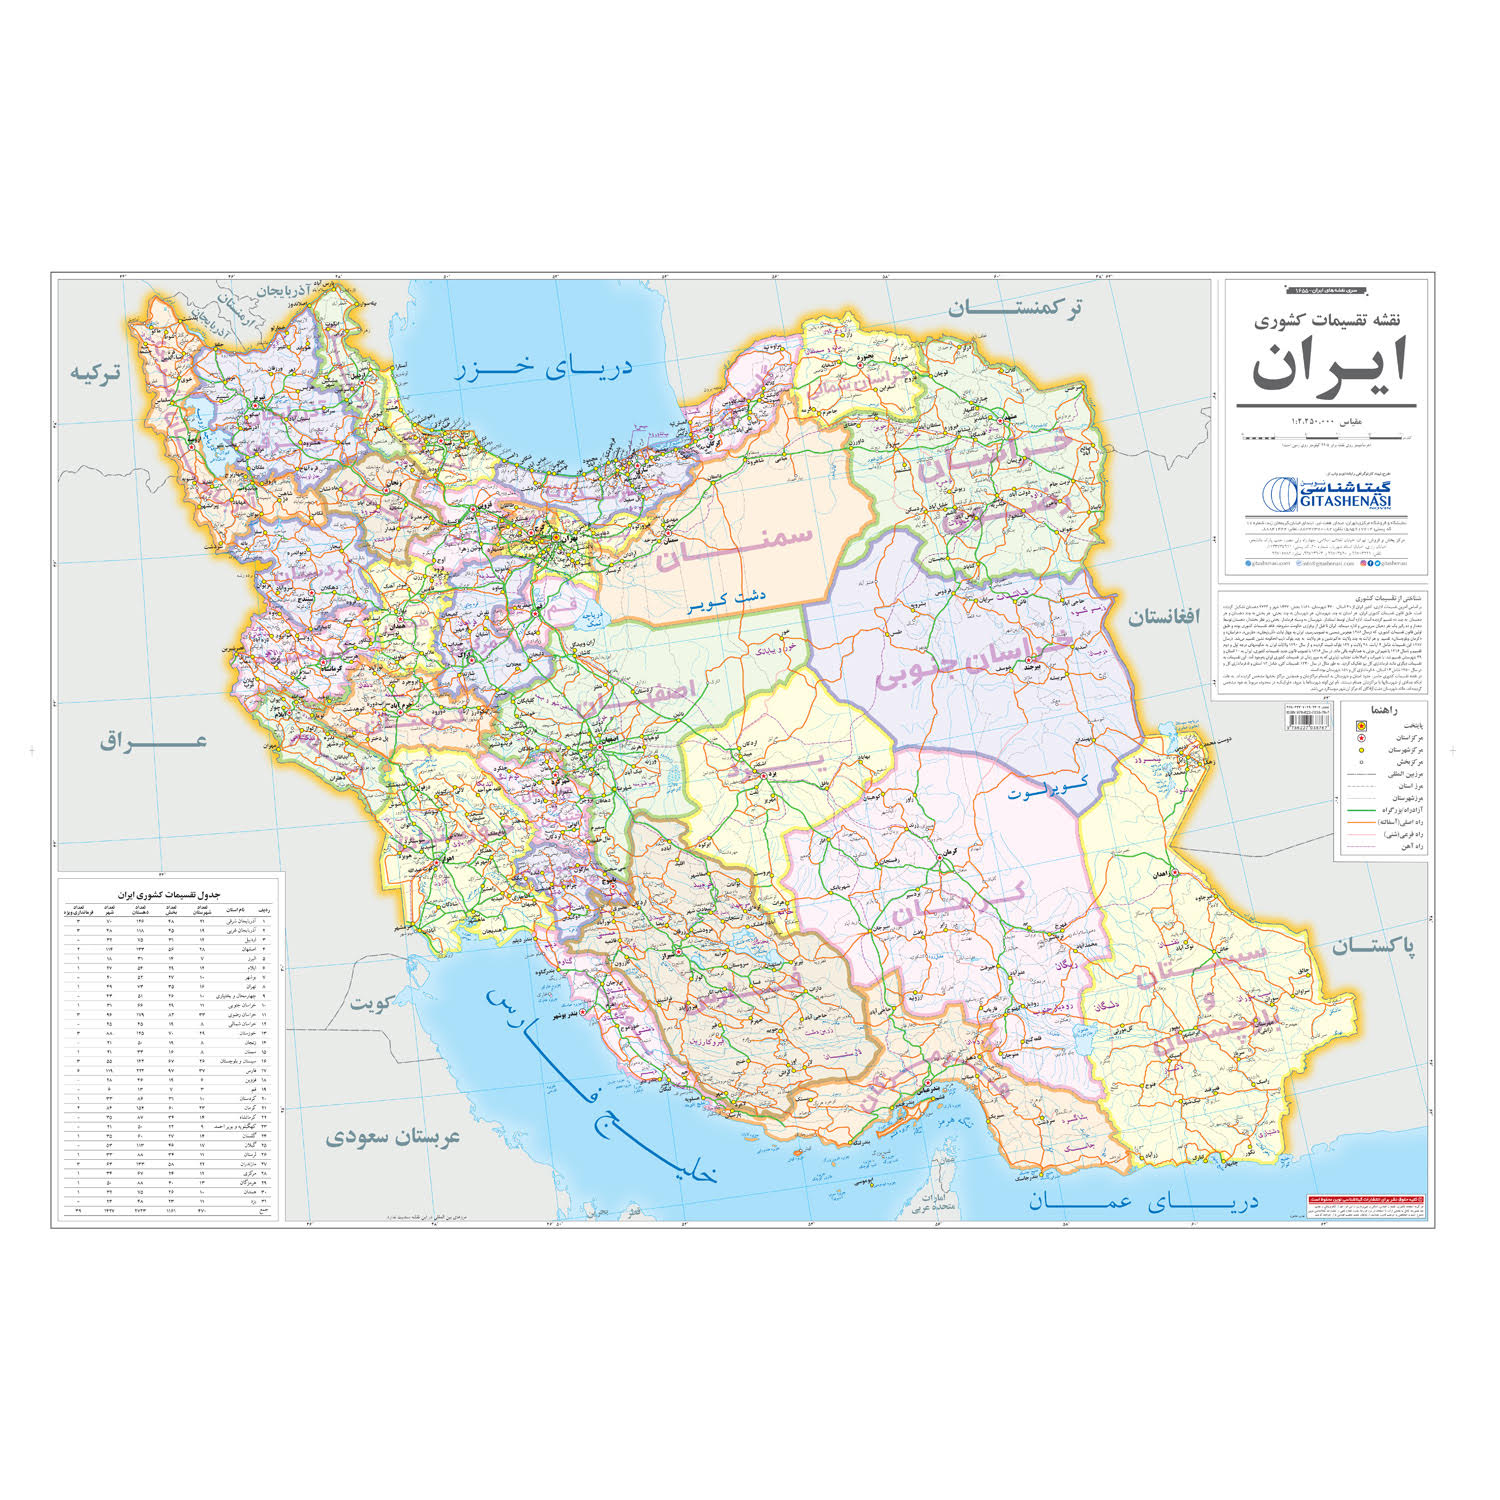 نقشه تقسیمات کشوری ایران انتشارات گیتاشناسی نوین کد 1655